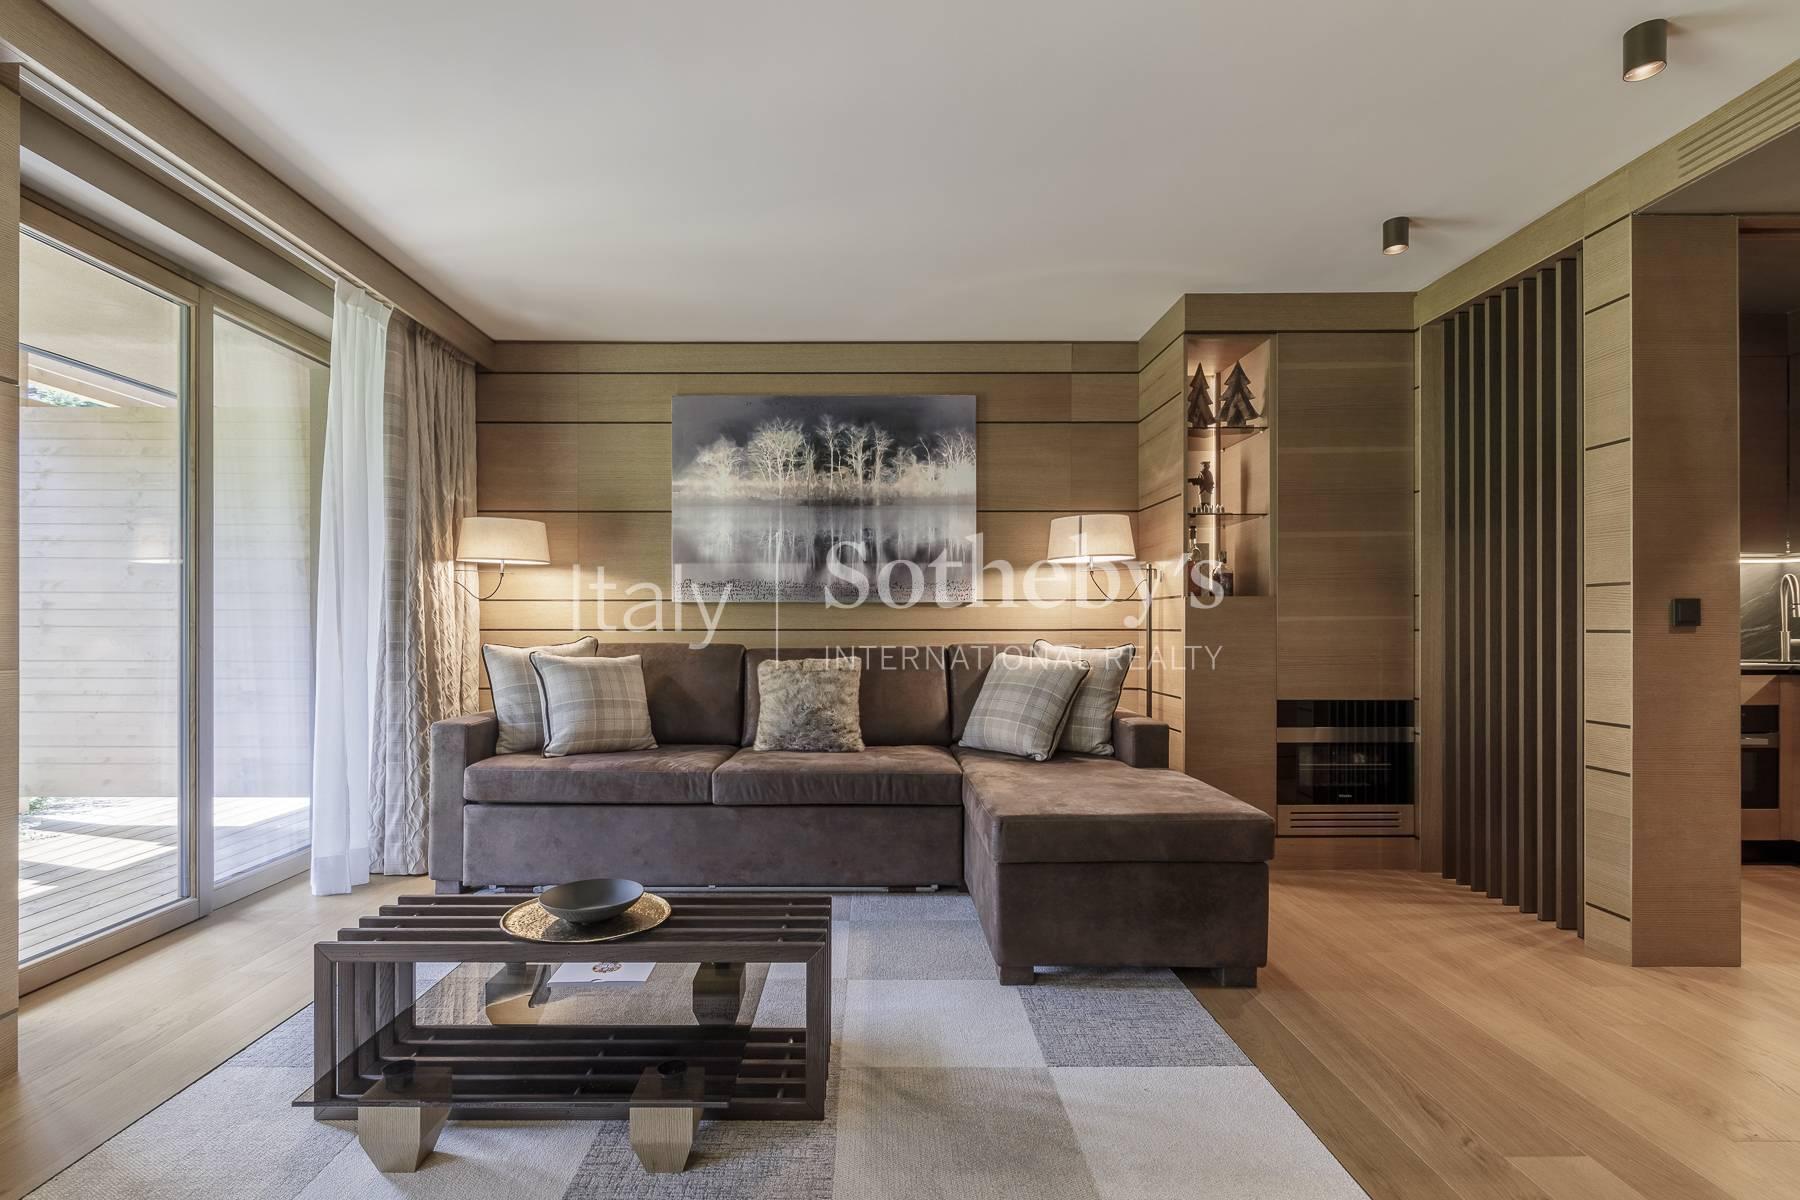 Exclusive apartment in the ski area of Madonna di Campiglio - 4